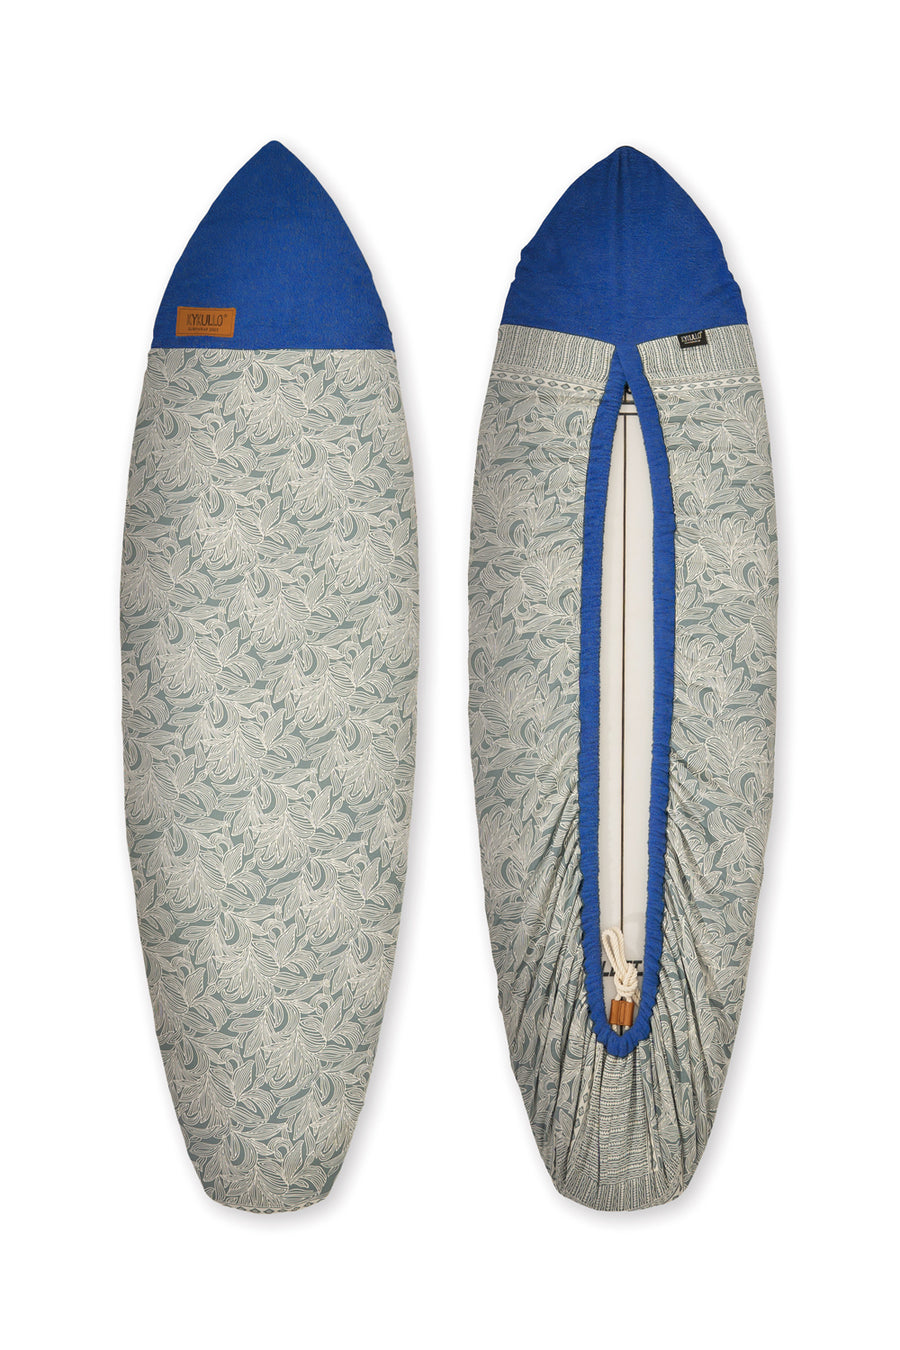 SURFWRAP 6'4 - BLUE JACKY